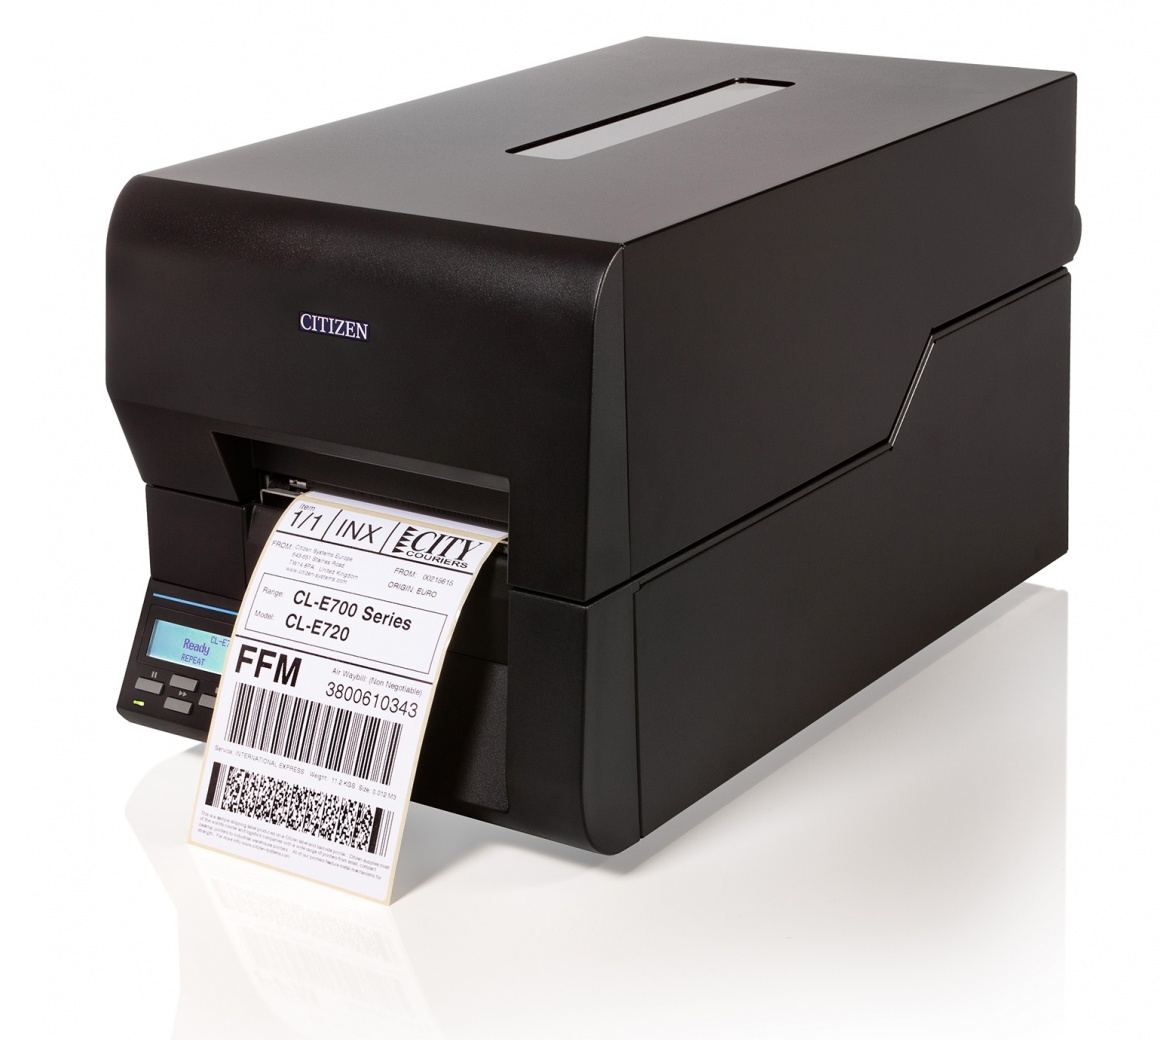 A small black label printer